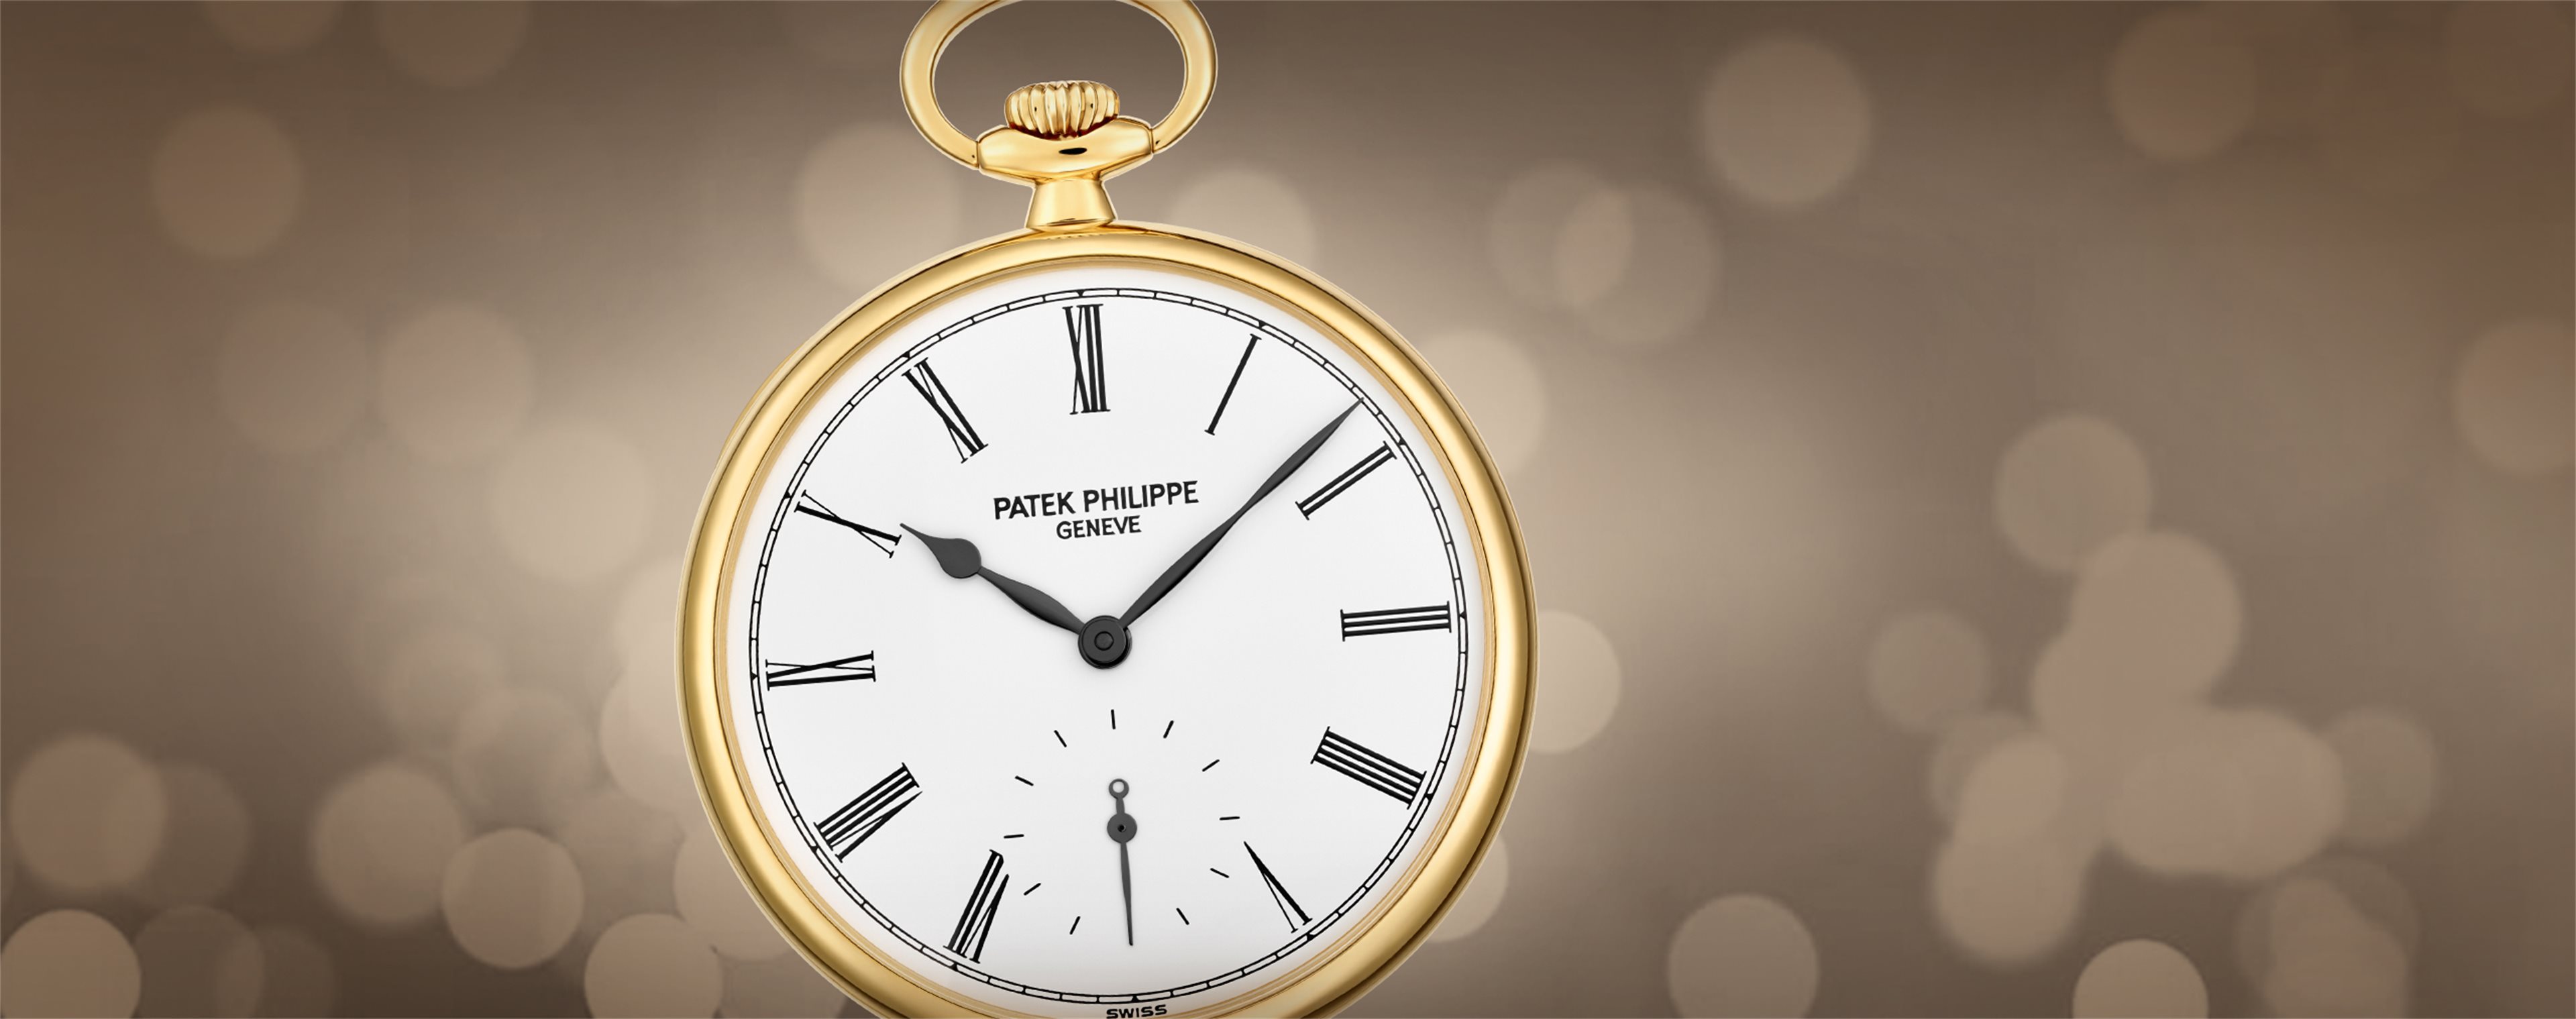 Patek Philippe 2019 World Time 18K White Gold 5230G-014